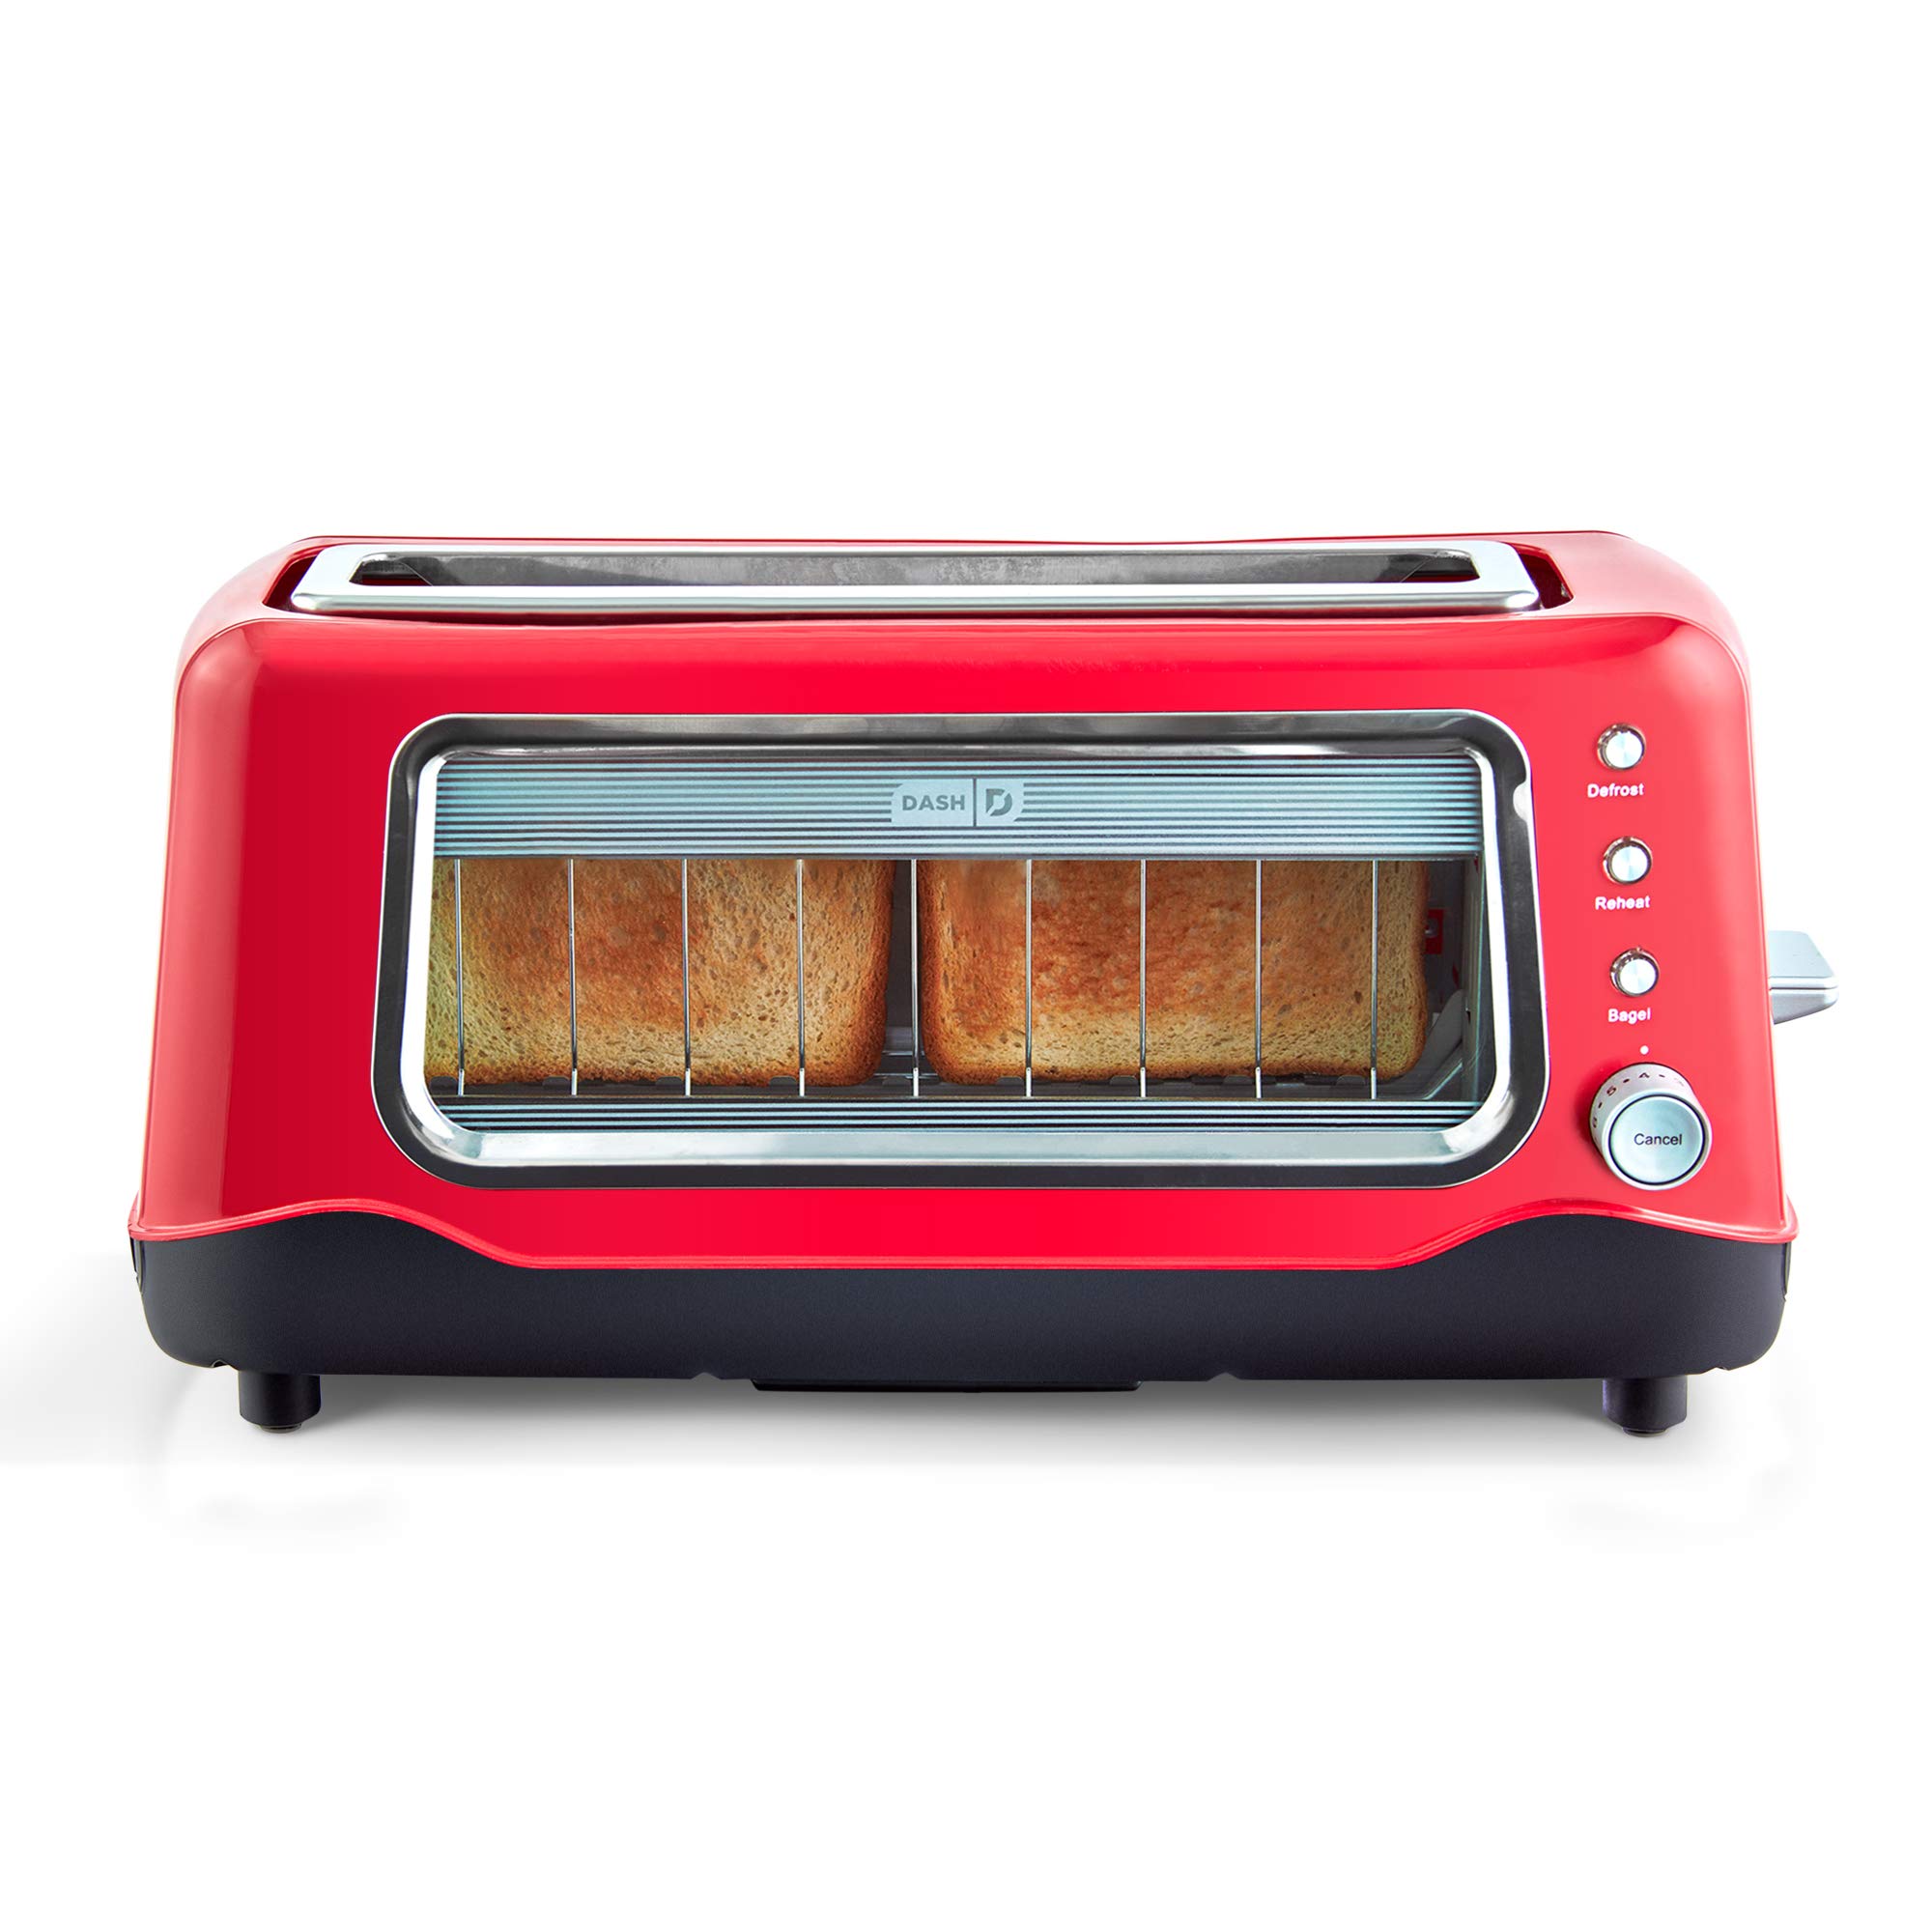 Dash Clear View Toaster: חלון שקוף לניטור התקדמות הקלייה